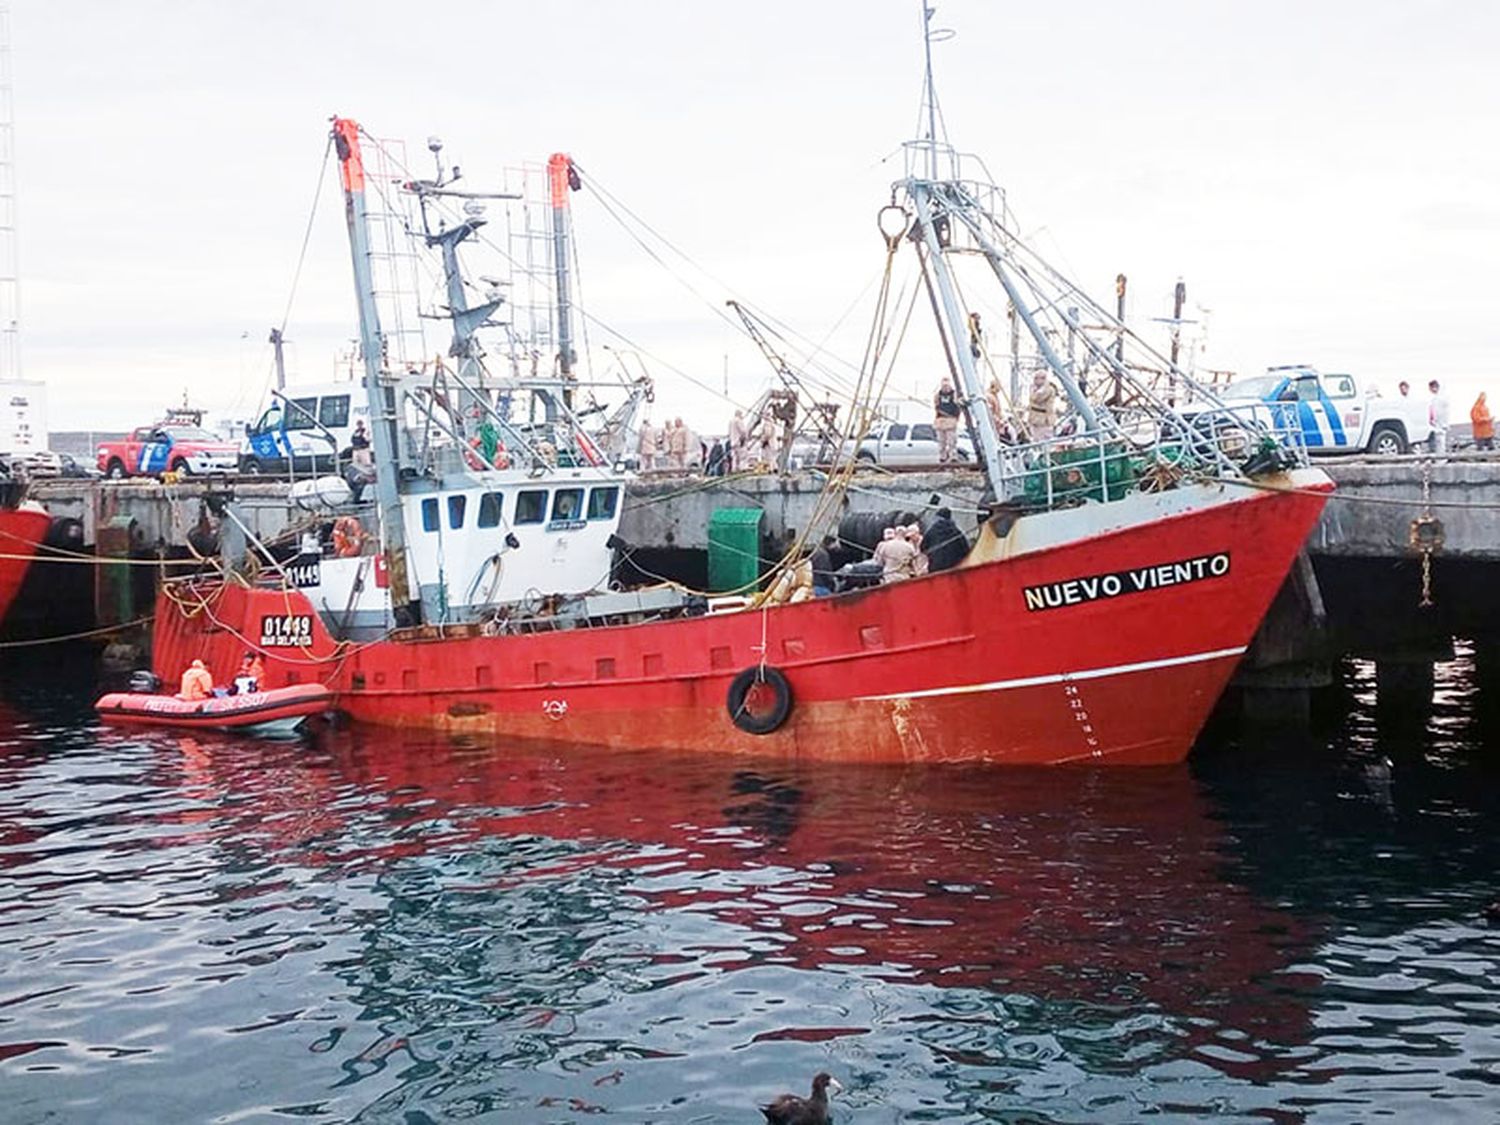 La desaparición de Ferreyra: el pesquero regresó al puerto